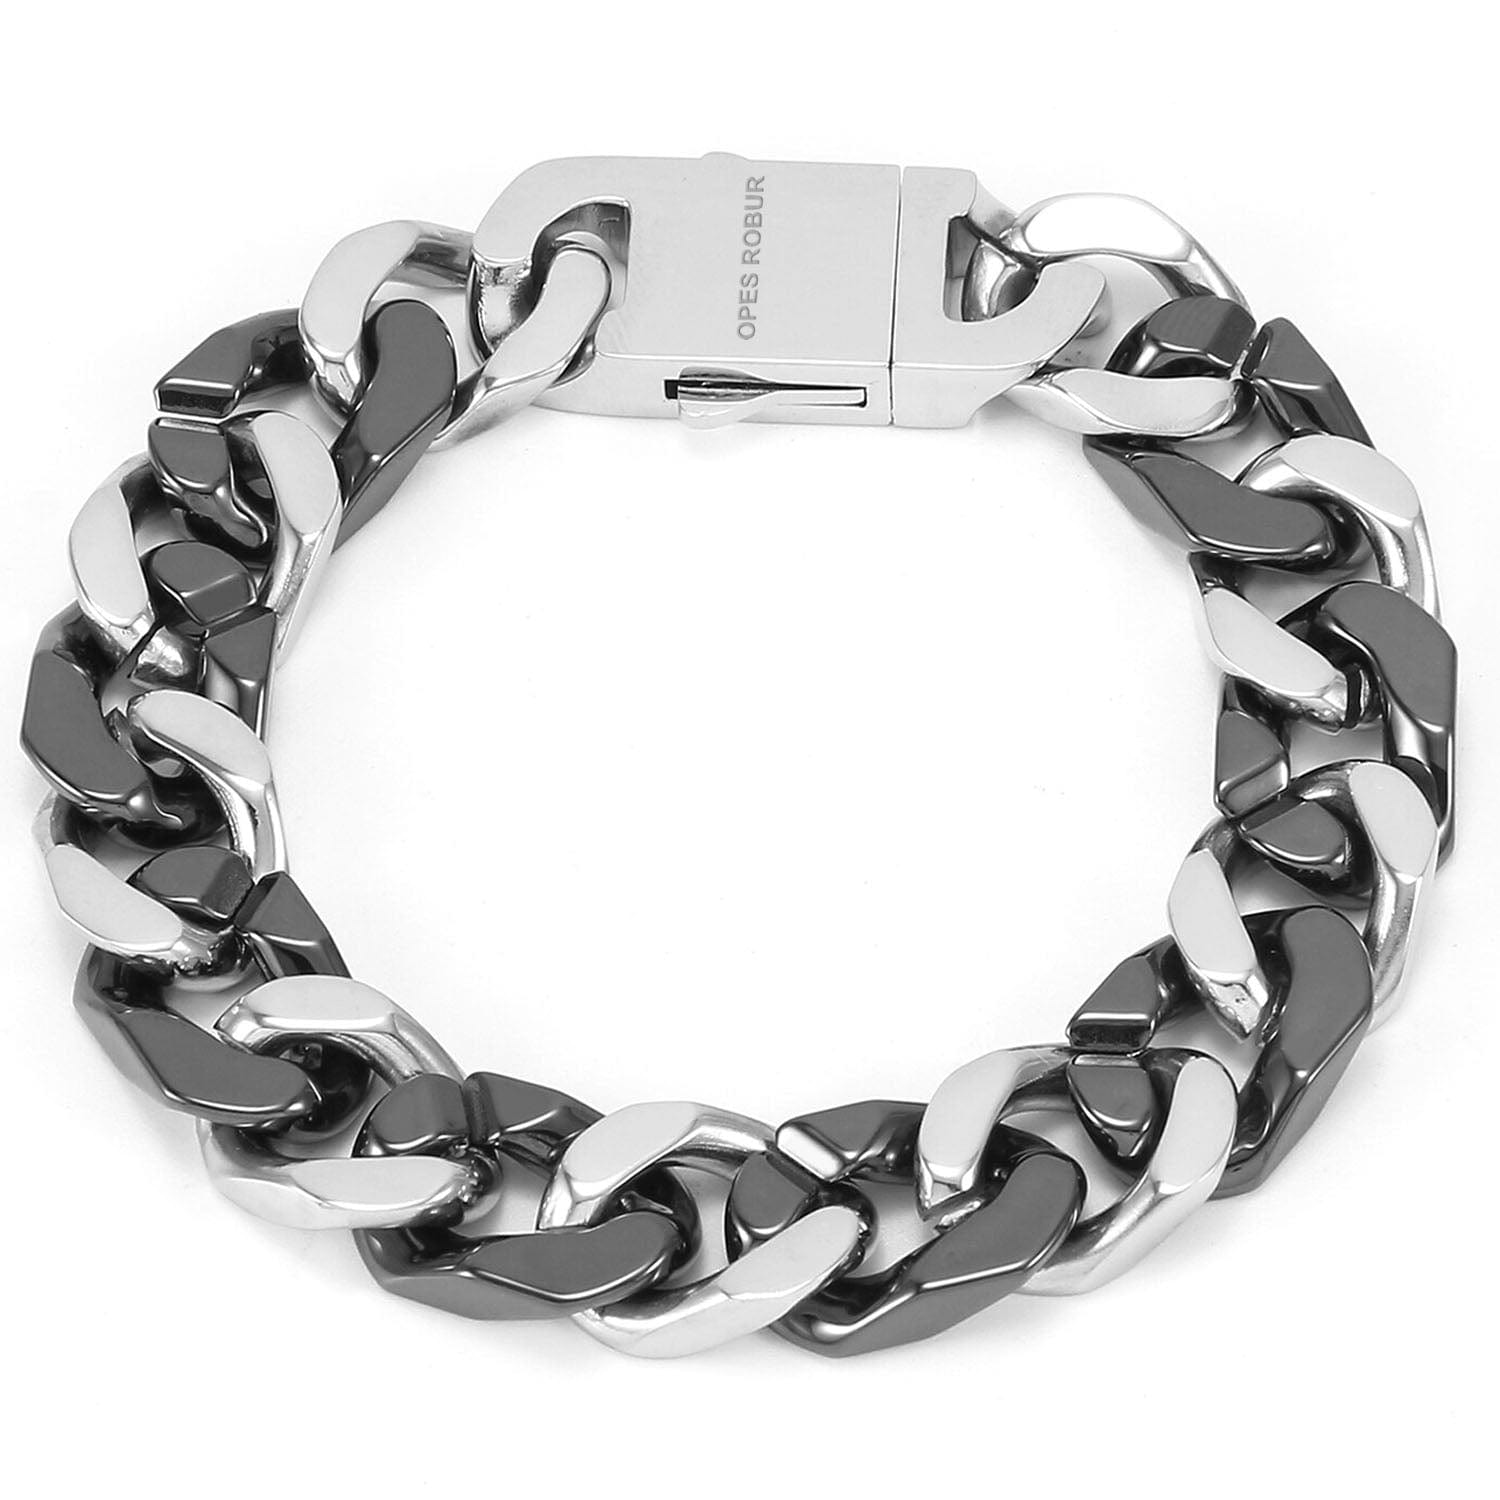 Opes Robur bracelet DARK-LIGHT